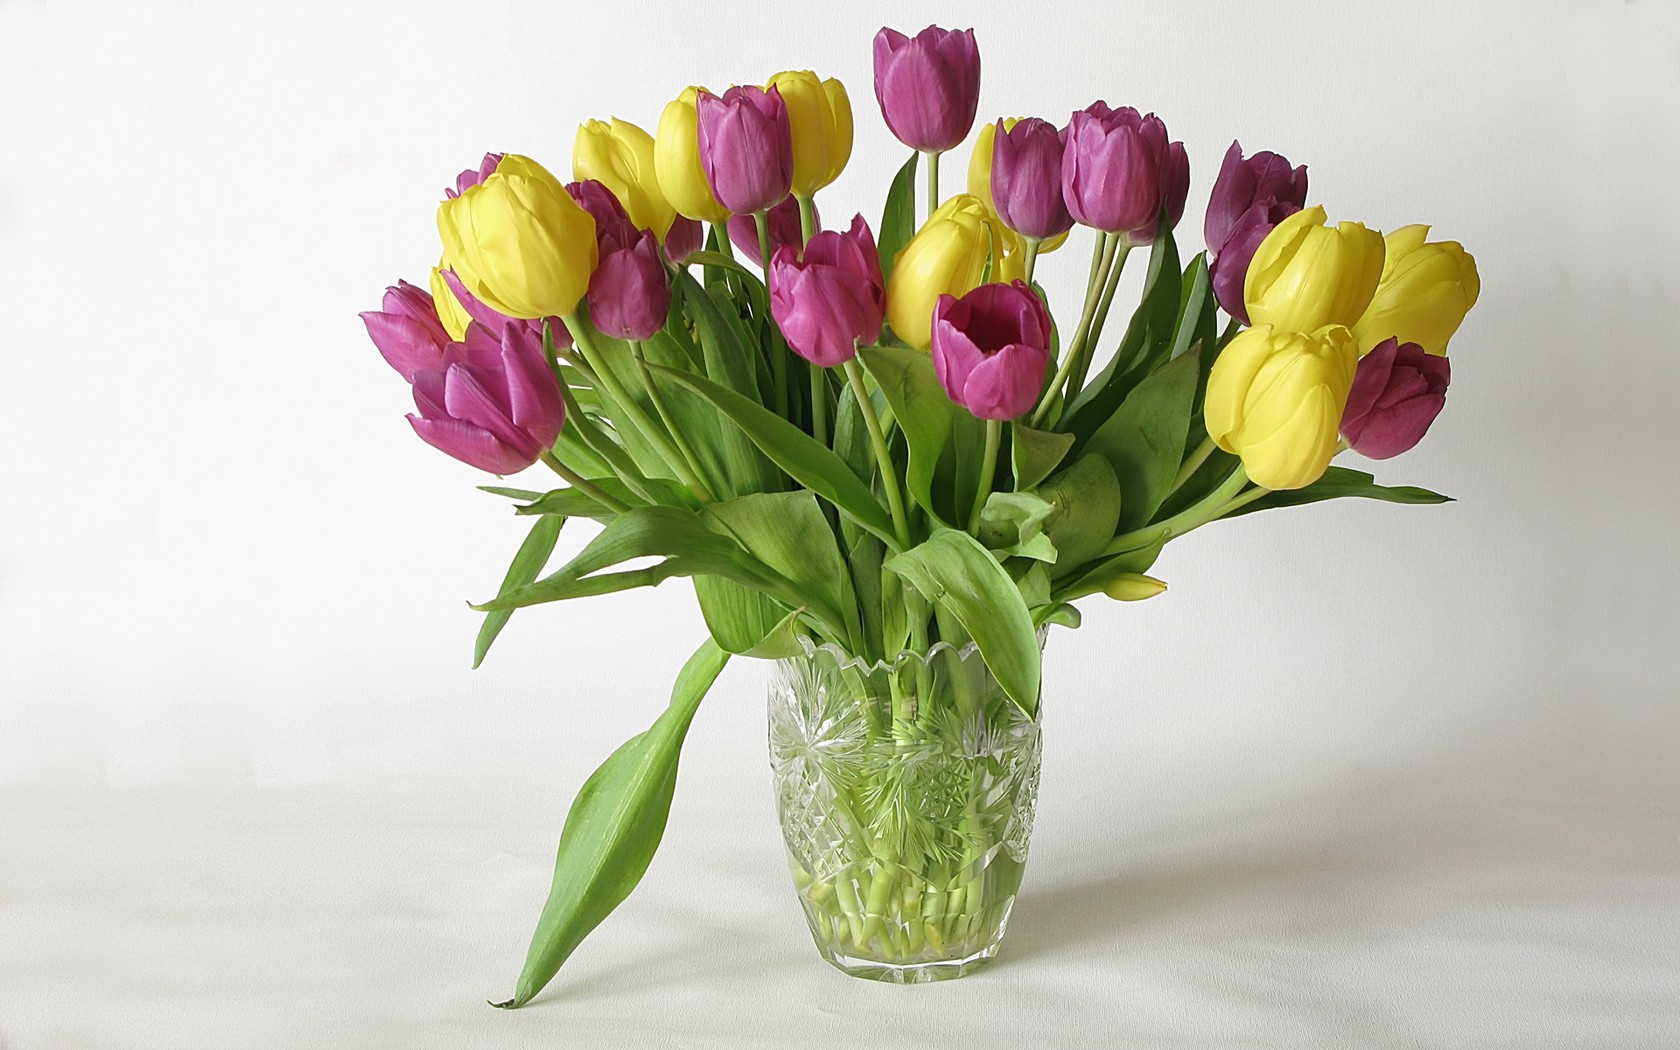 Obrzek, tapeta Tulipny v 1680x1050 pixel. Pozad, wallpaper zdarma